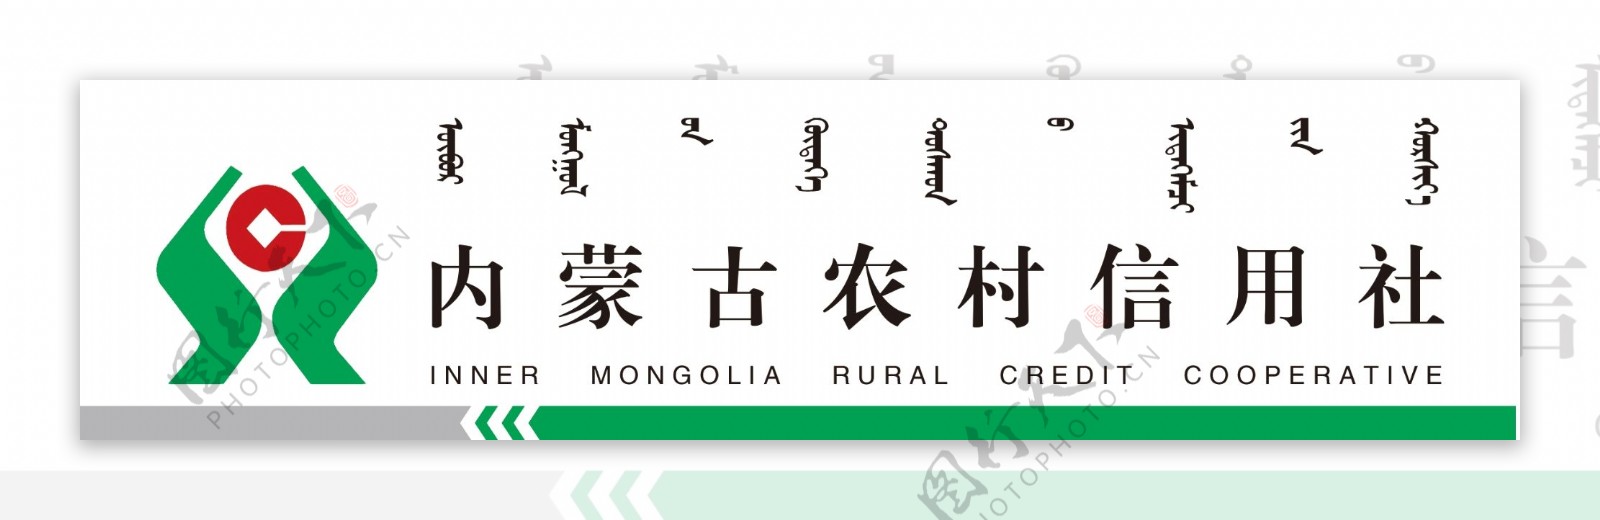 内蒙古农村信用社